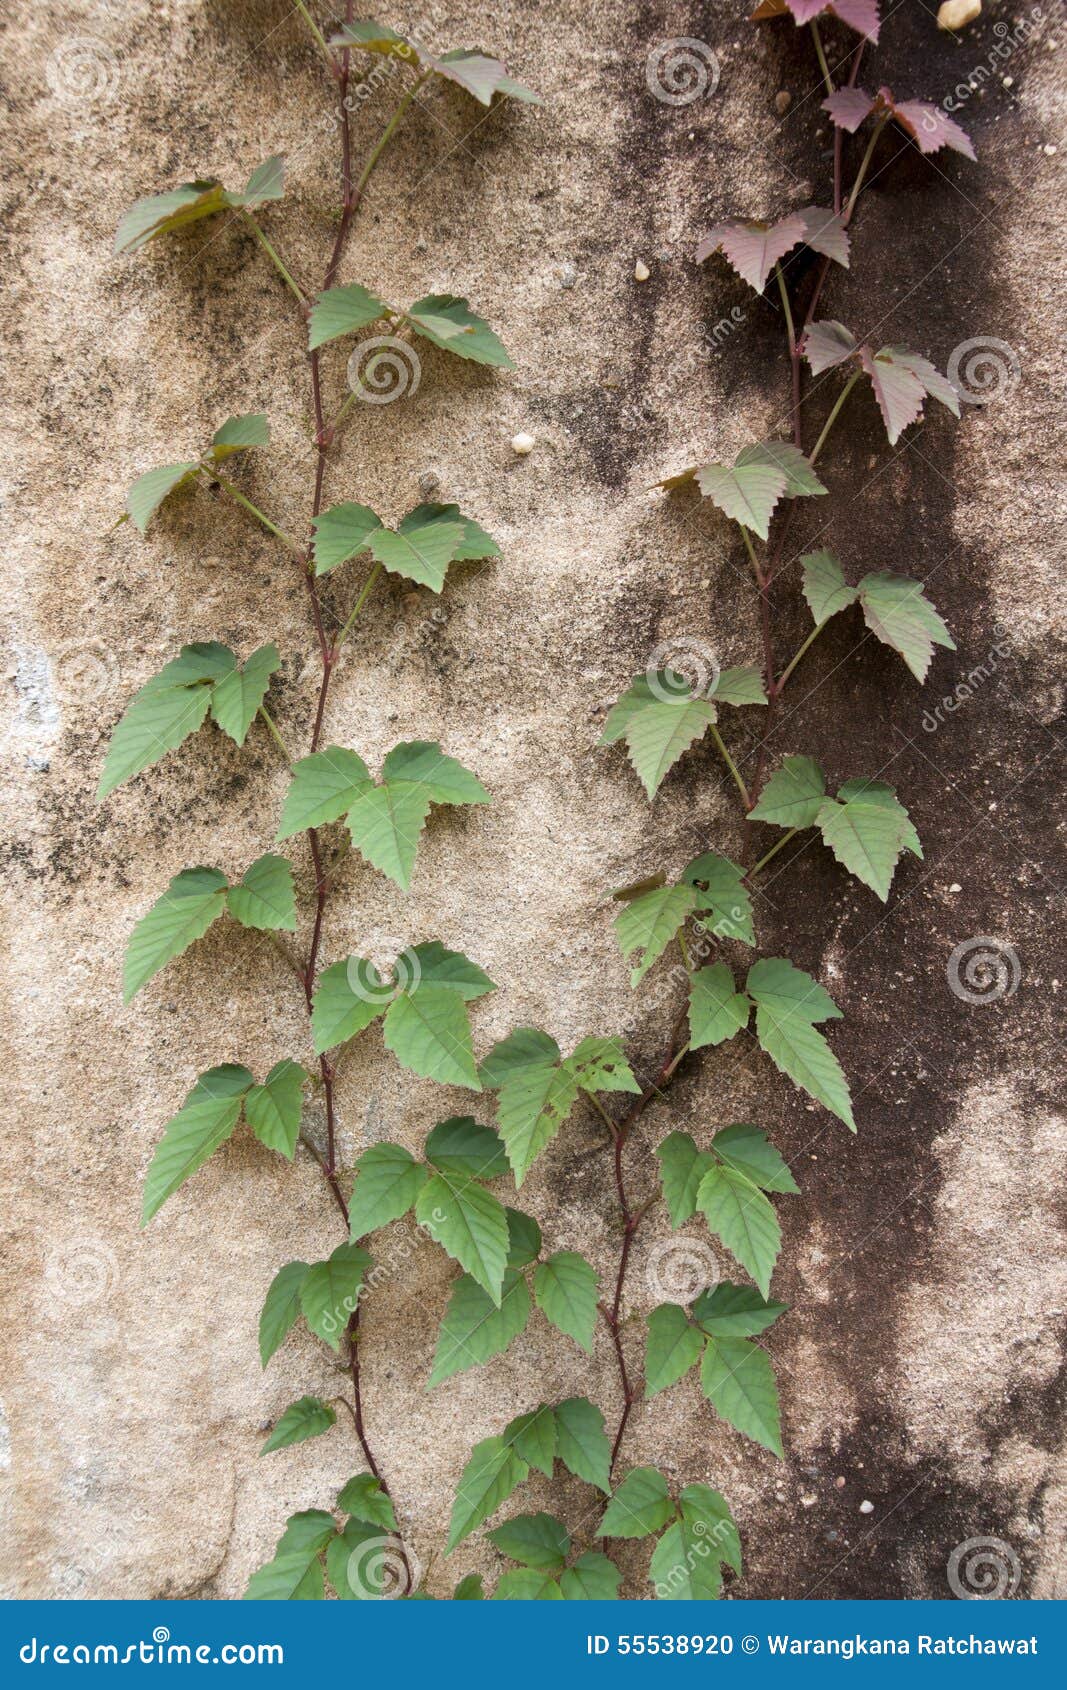 爬行植物图片及名称,16种最美爬墙植物图片 - 伤感说说吧